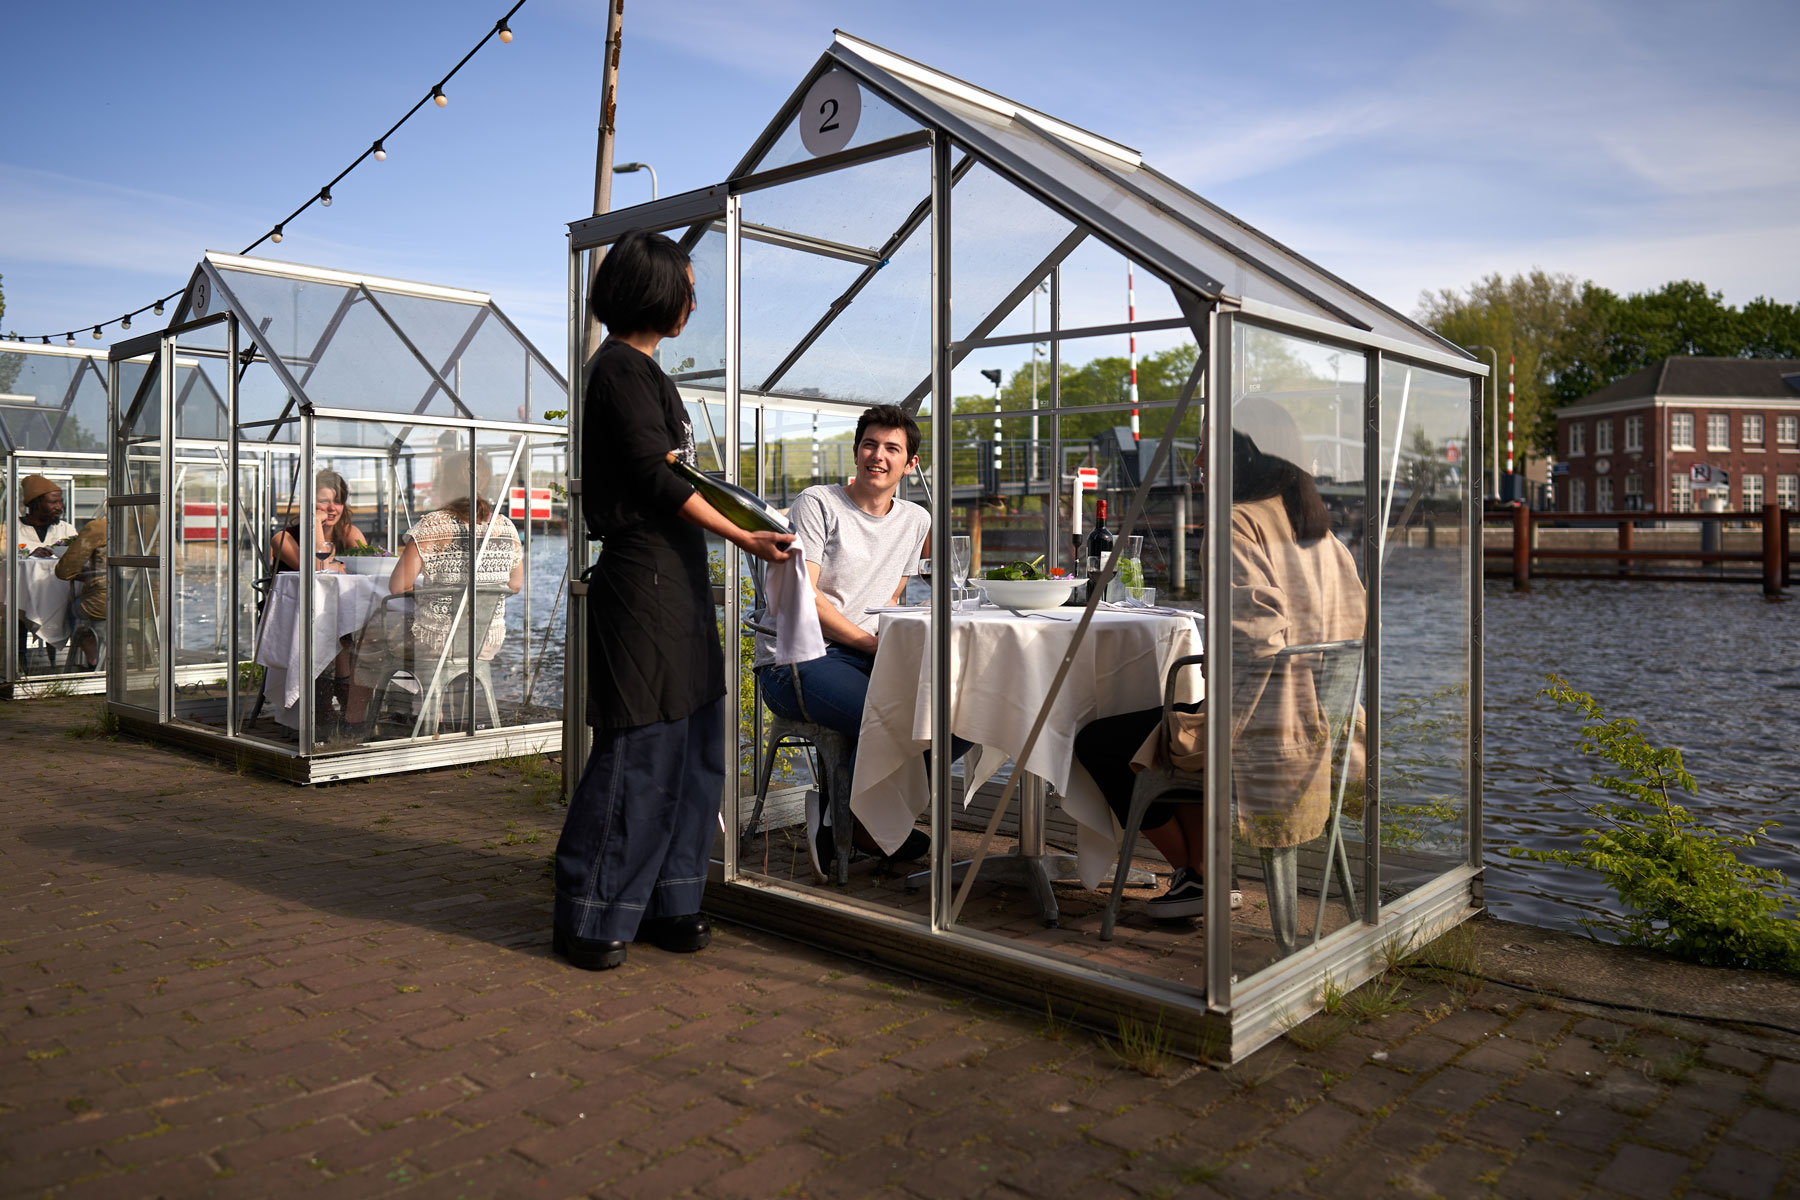 Un ristorante di Amsterdam propone tavoli in casette ecologiche singole per un'esperienza culinaria adorabile e sicura.